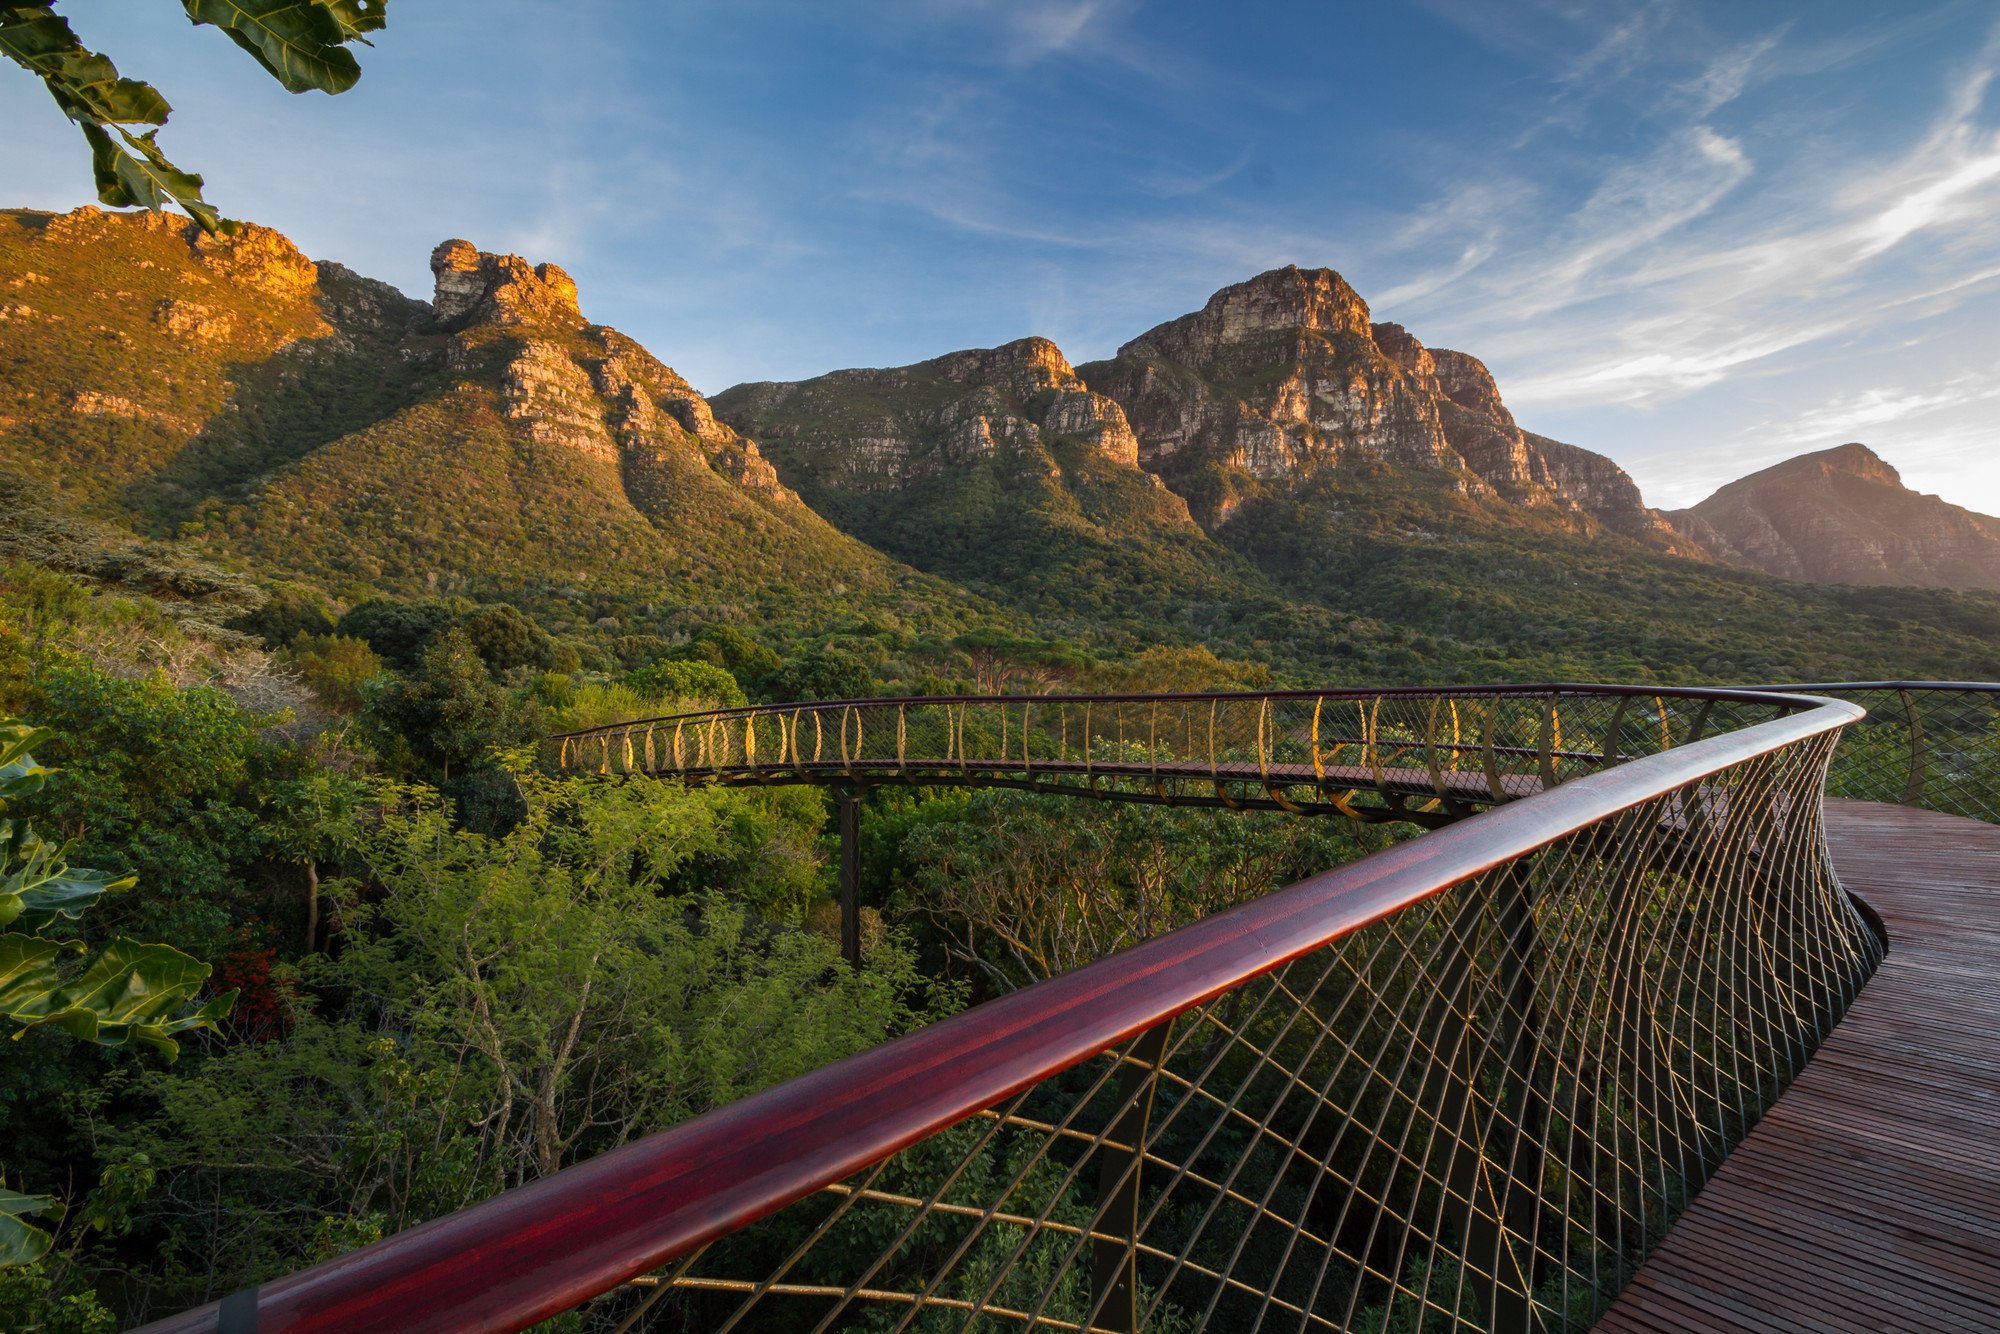 Cape Town, Kirstenbosch National Botanical Garden, Mountains, Trees, Bridge, Nature Wallpaper